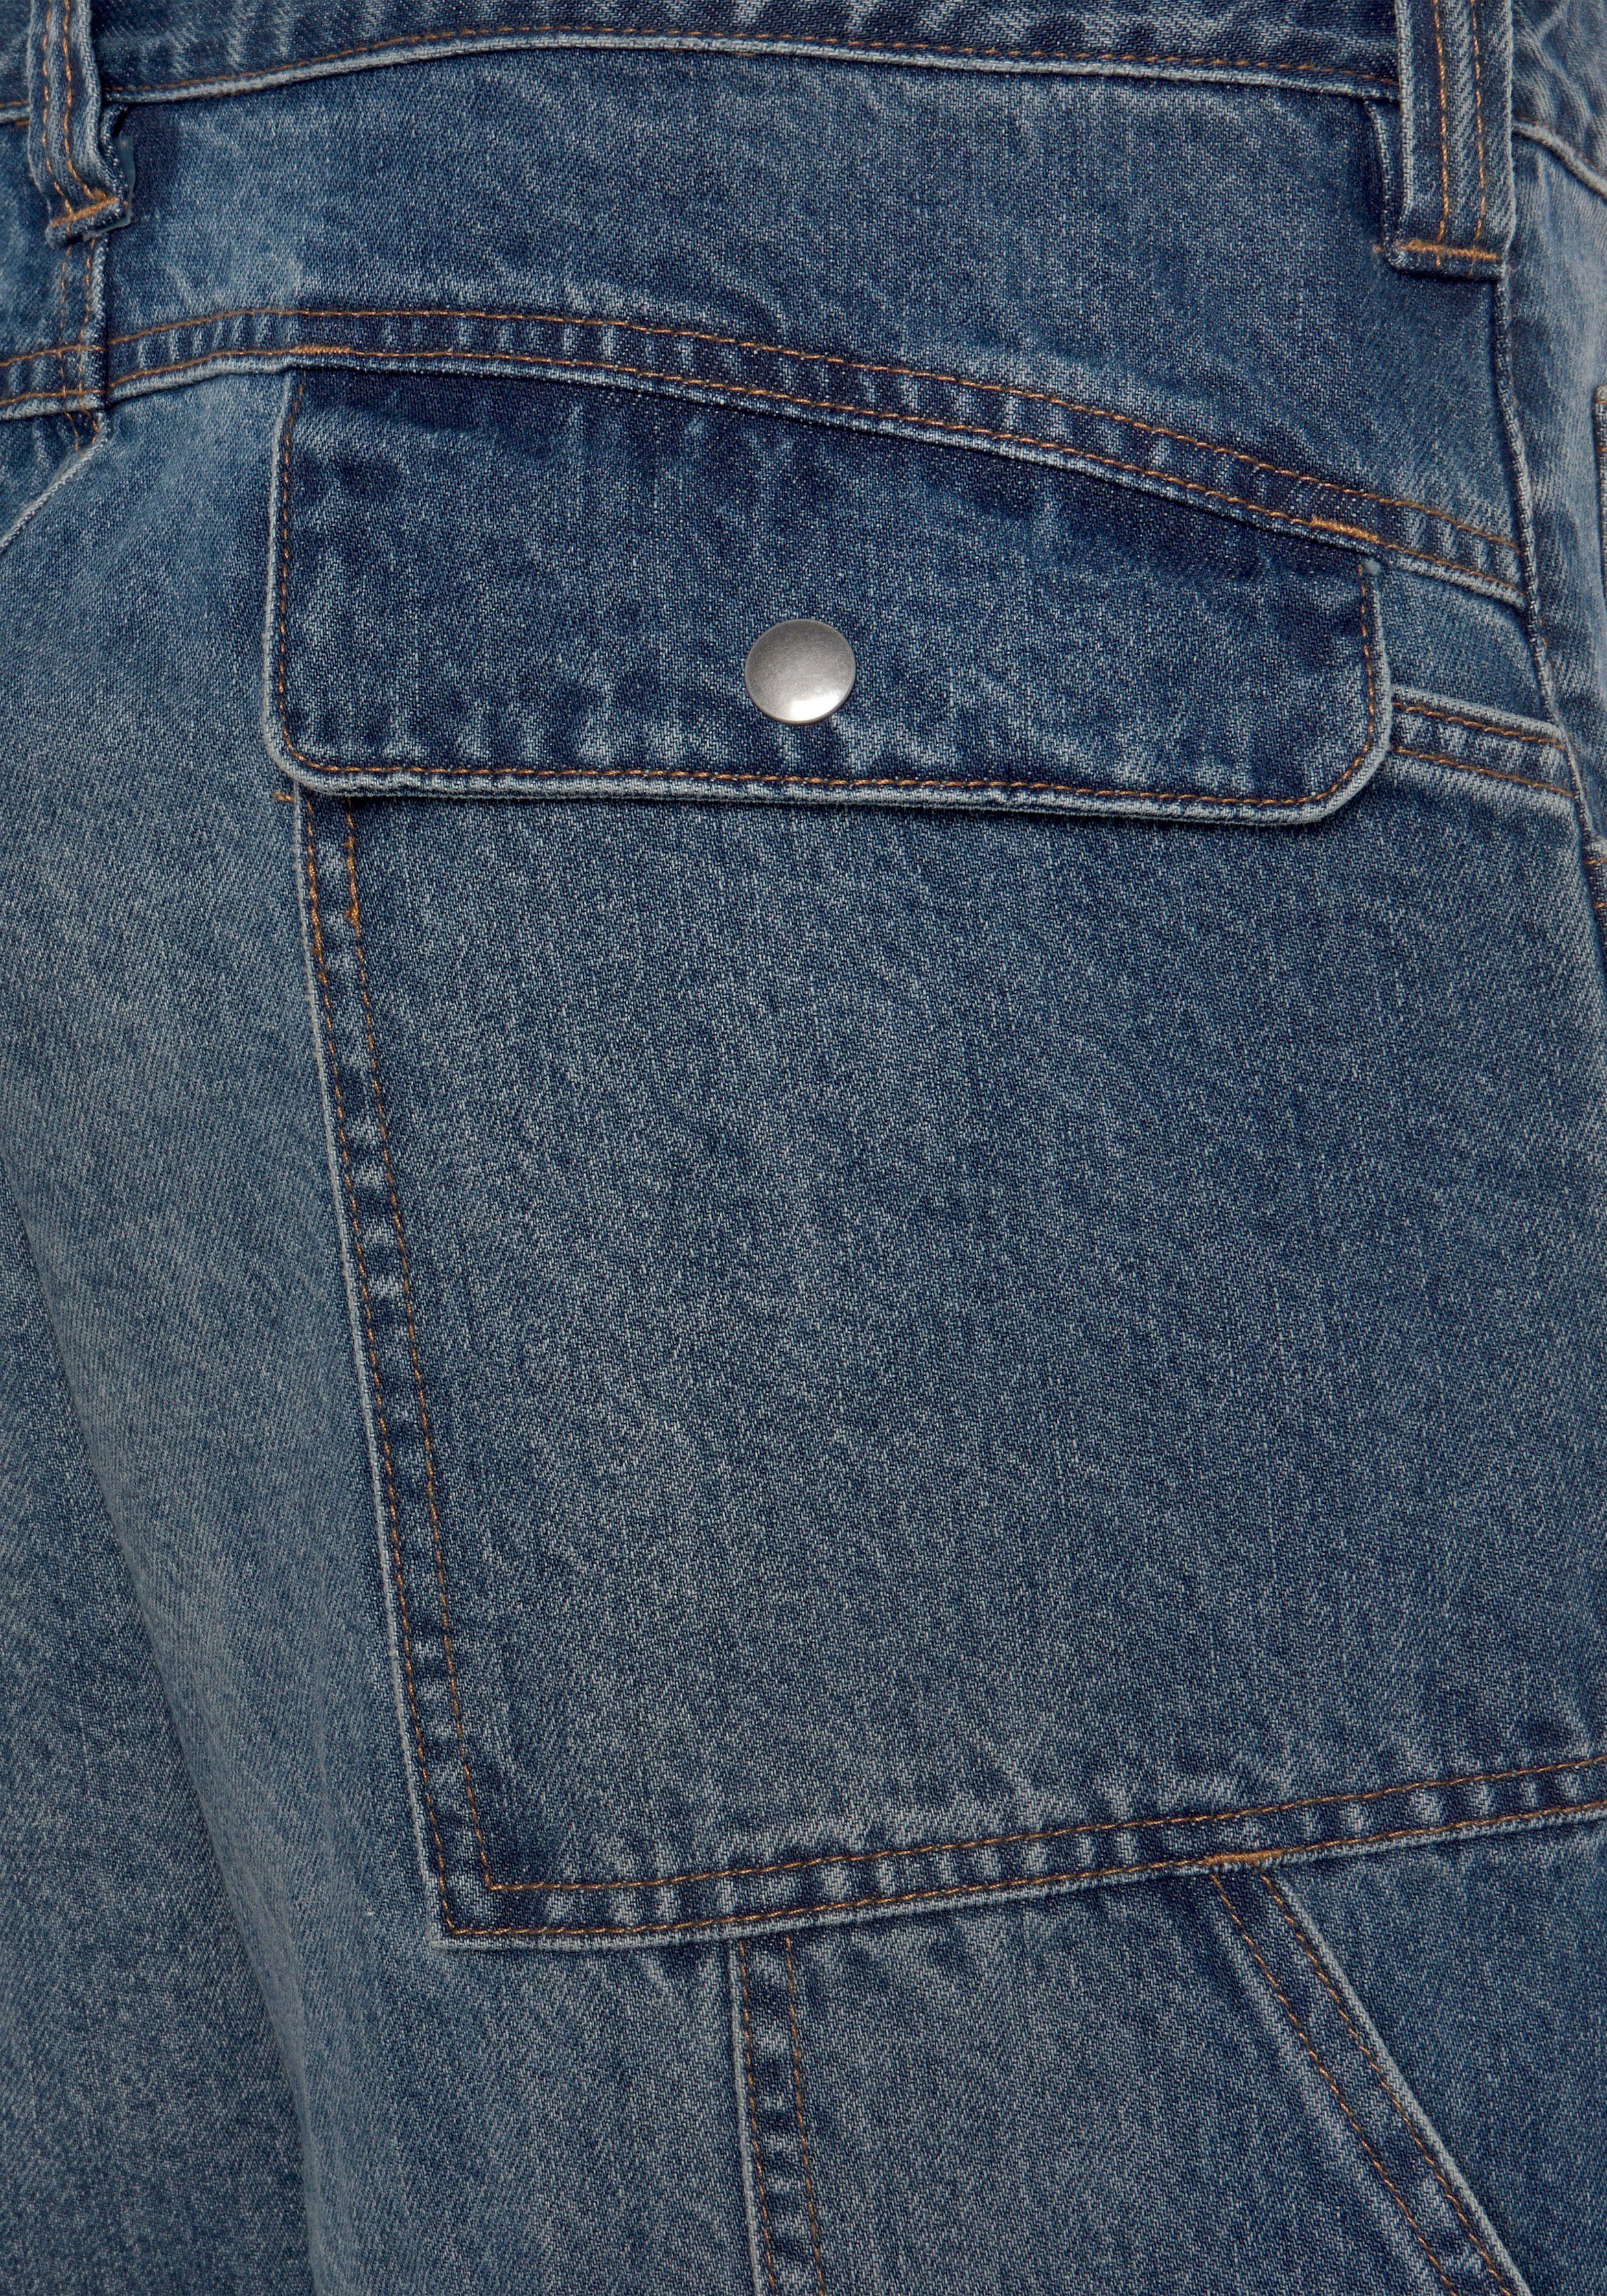 Country Bund, Jeans Baumwolle, dehnbarem comfort fit) Arbeitshose Jeansstoff, Taschen mit Multipocket Northern 9 (aus robuster mit praktischen 100%